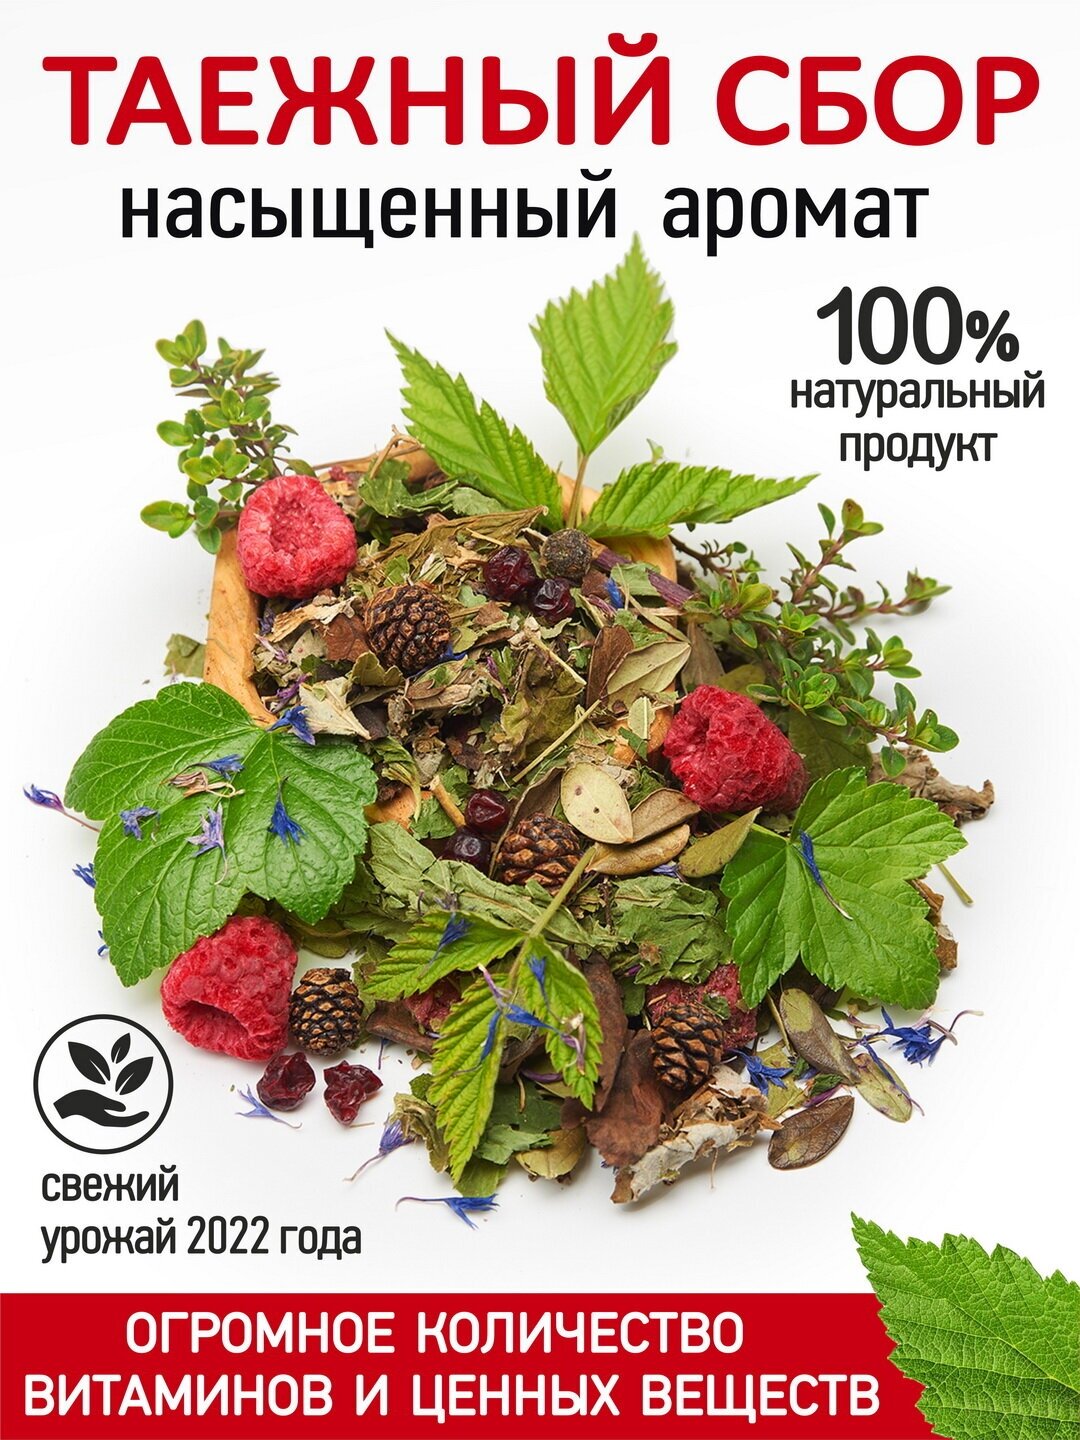 Чай Таежный сбор "Правильные травы" 200 г, фиточай с лесными ягодами и луговыми травами, листовой, рассыпной